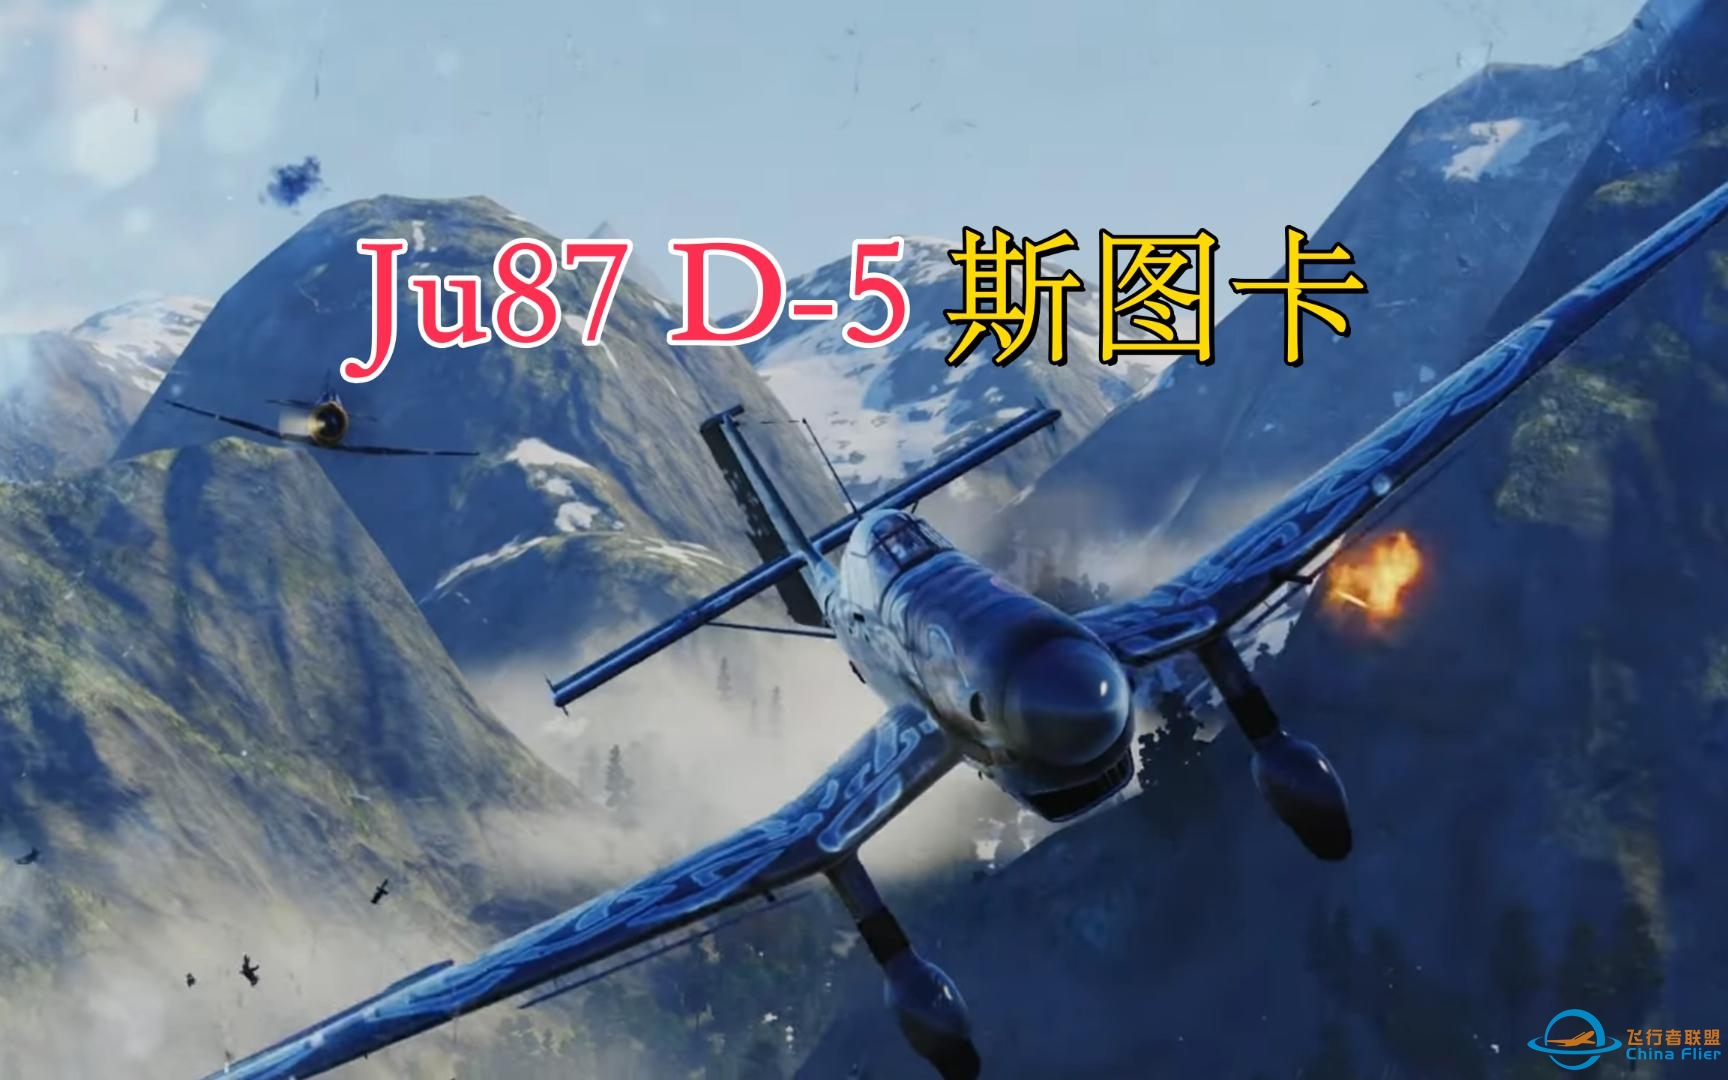 [战机世界]Ju87 D-5斯图卡Wargaming官方宣传片-9664 